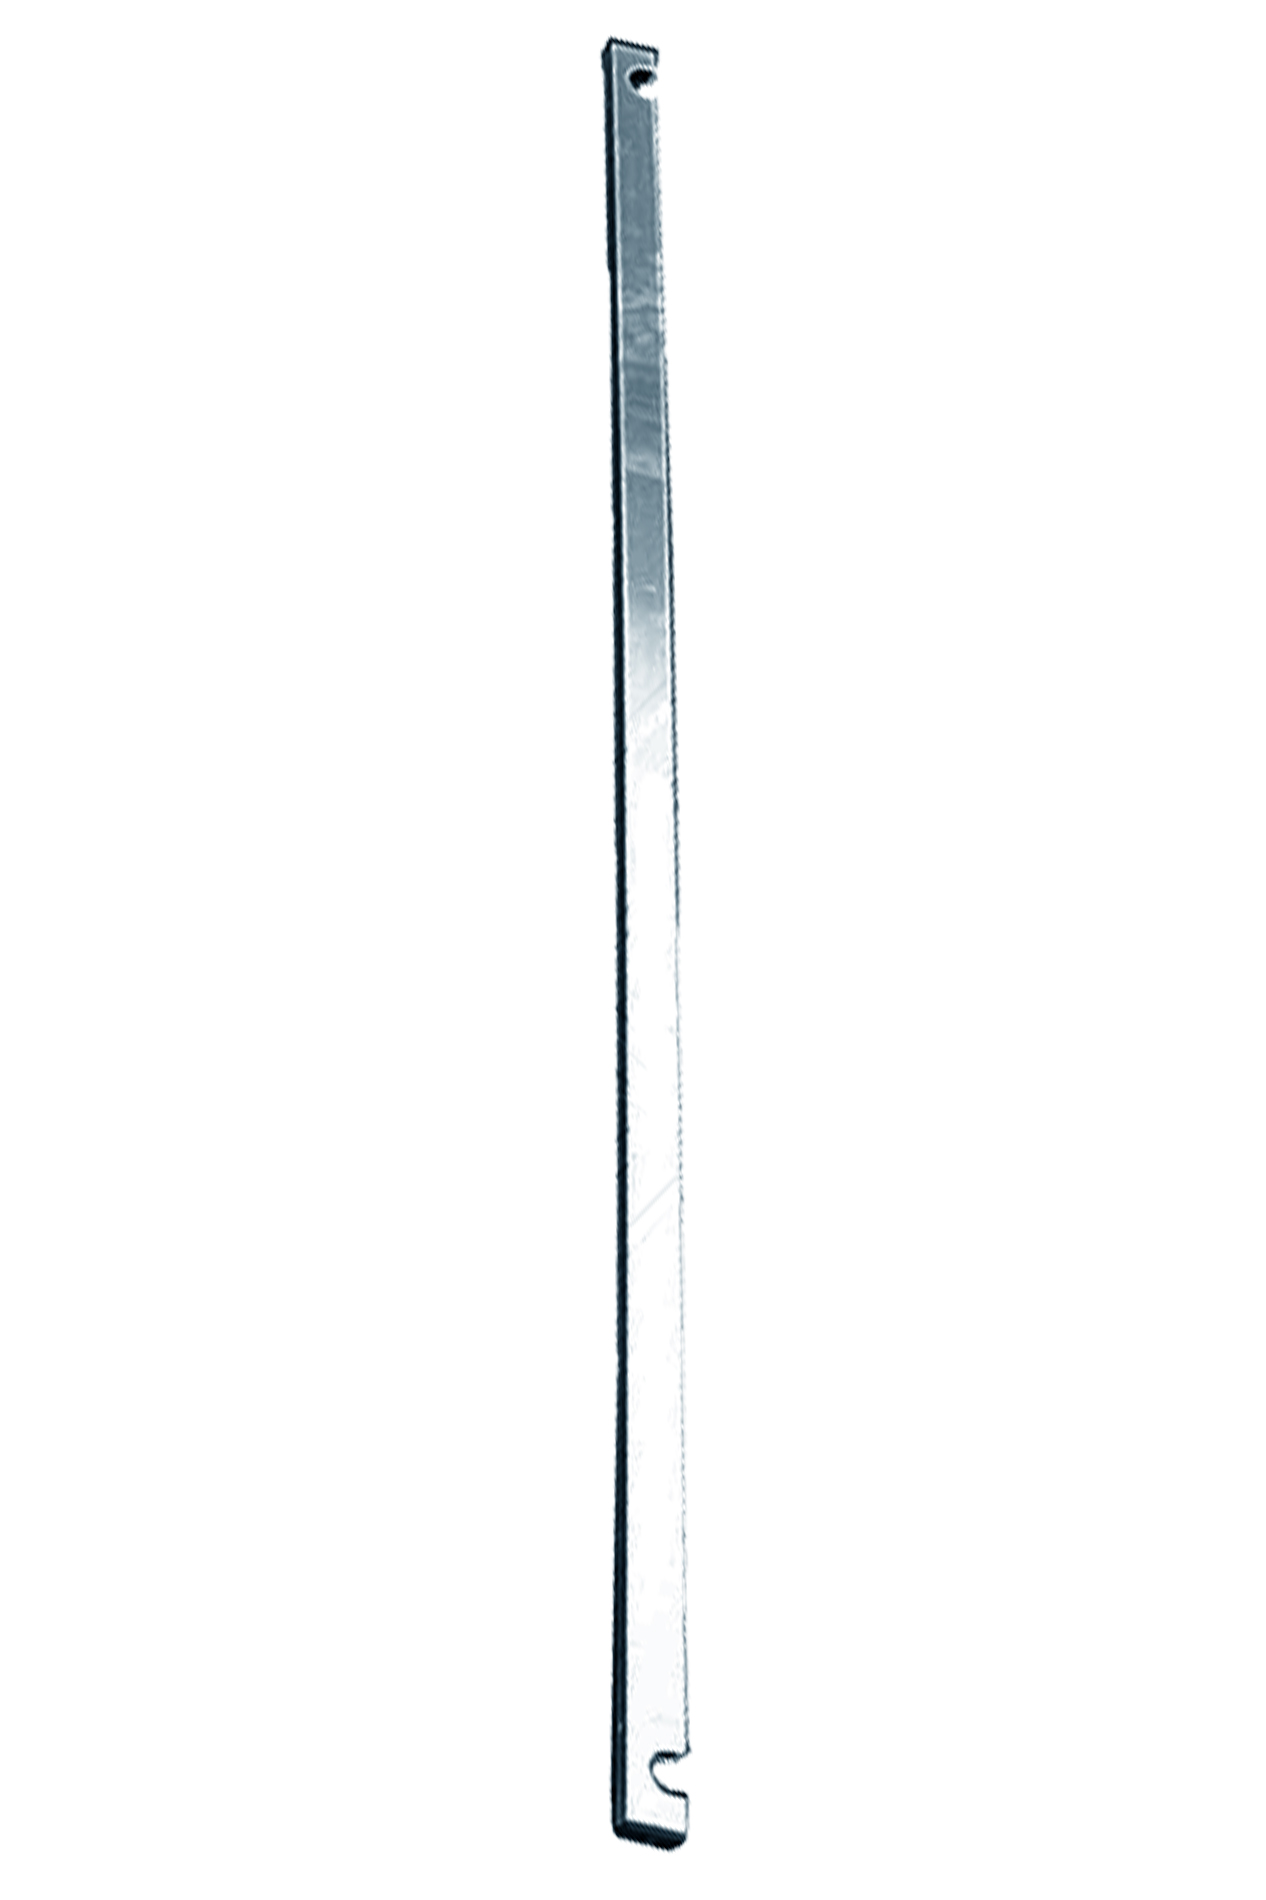 Дополнительное изображение STABILO 100-3 Передвижные подмости, рабочая высота 10,3 м, размер площадки (3.0x0.75 м)